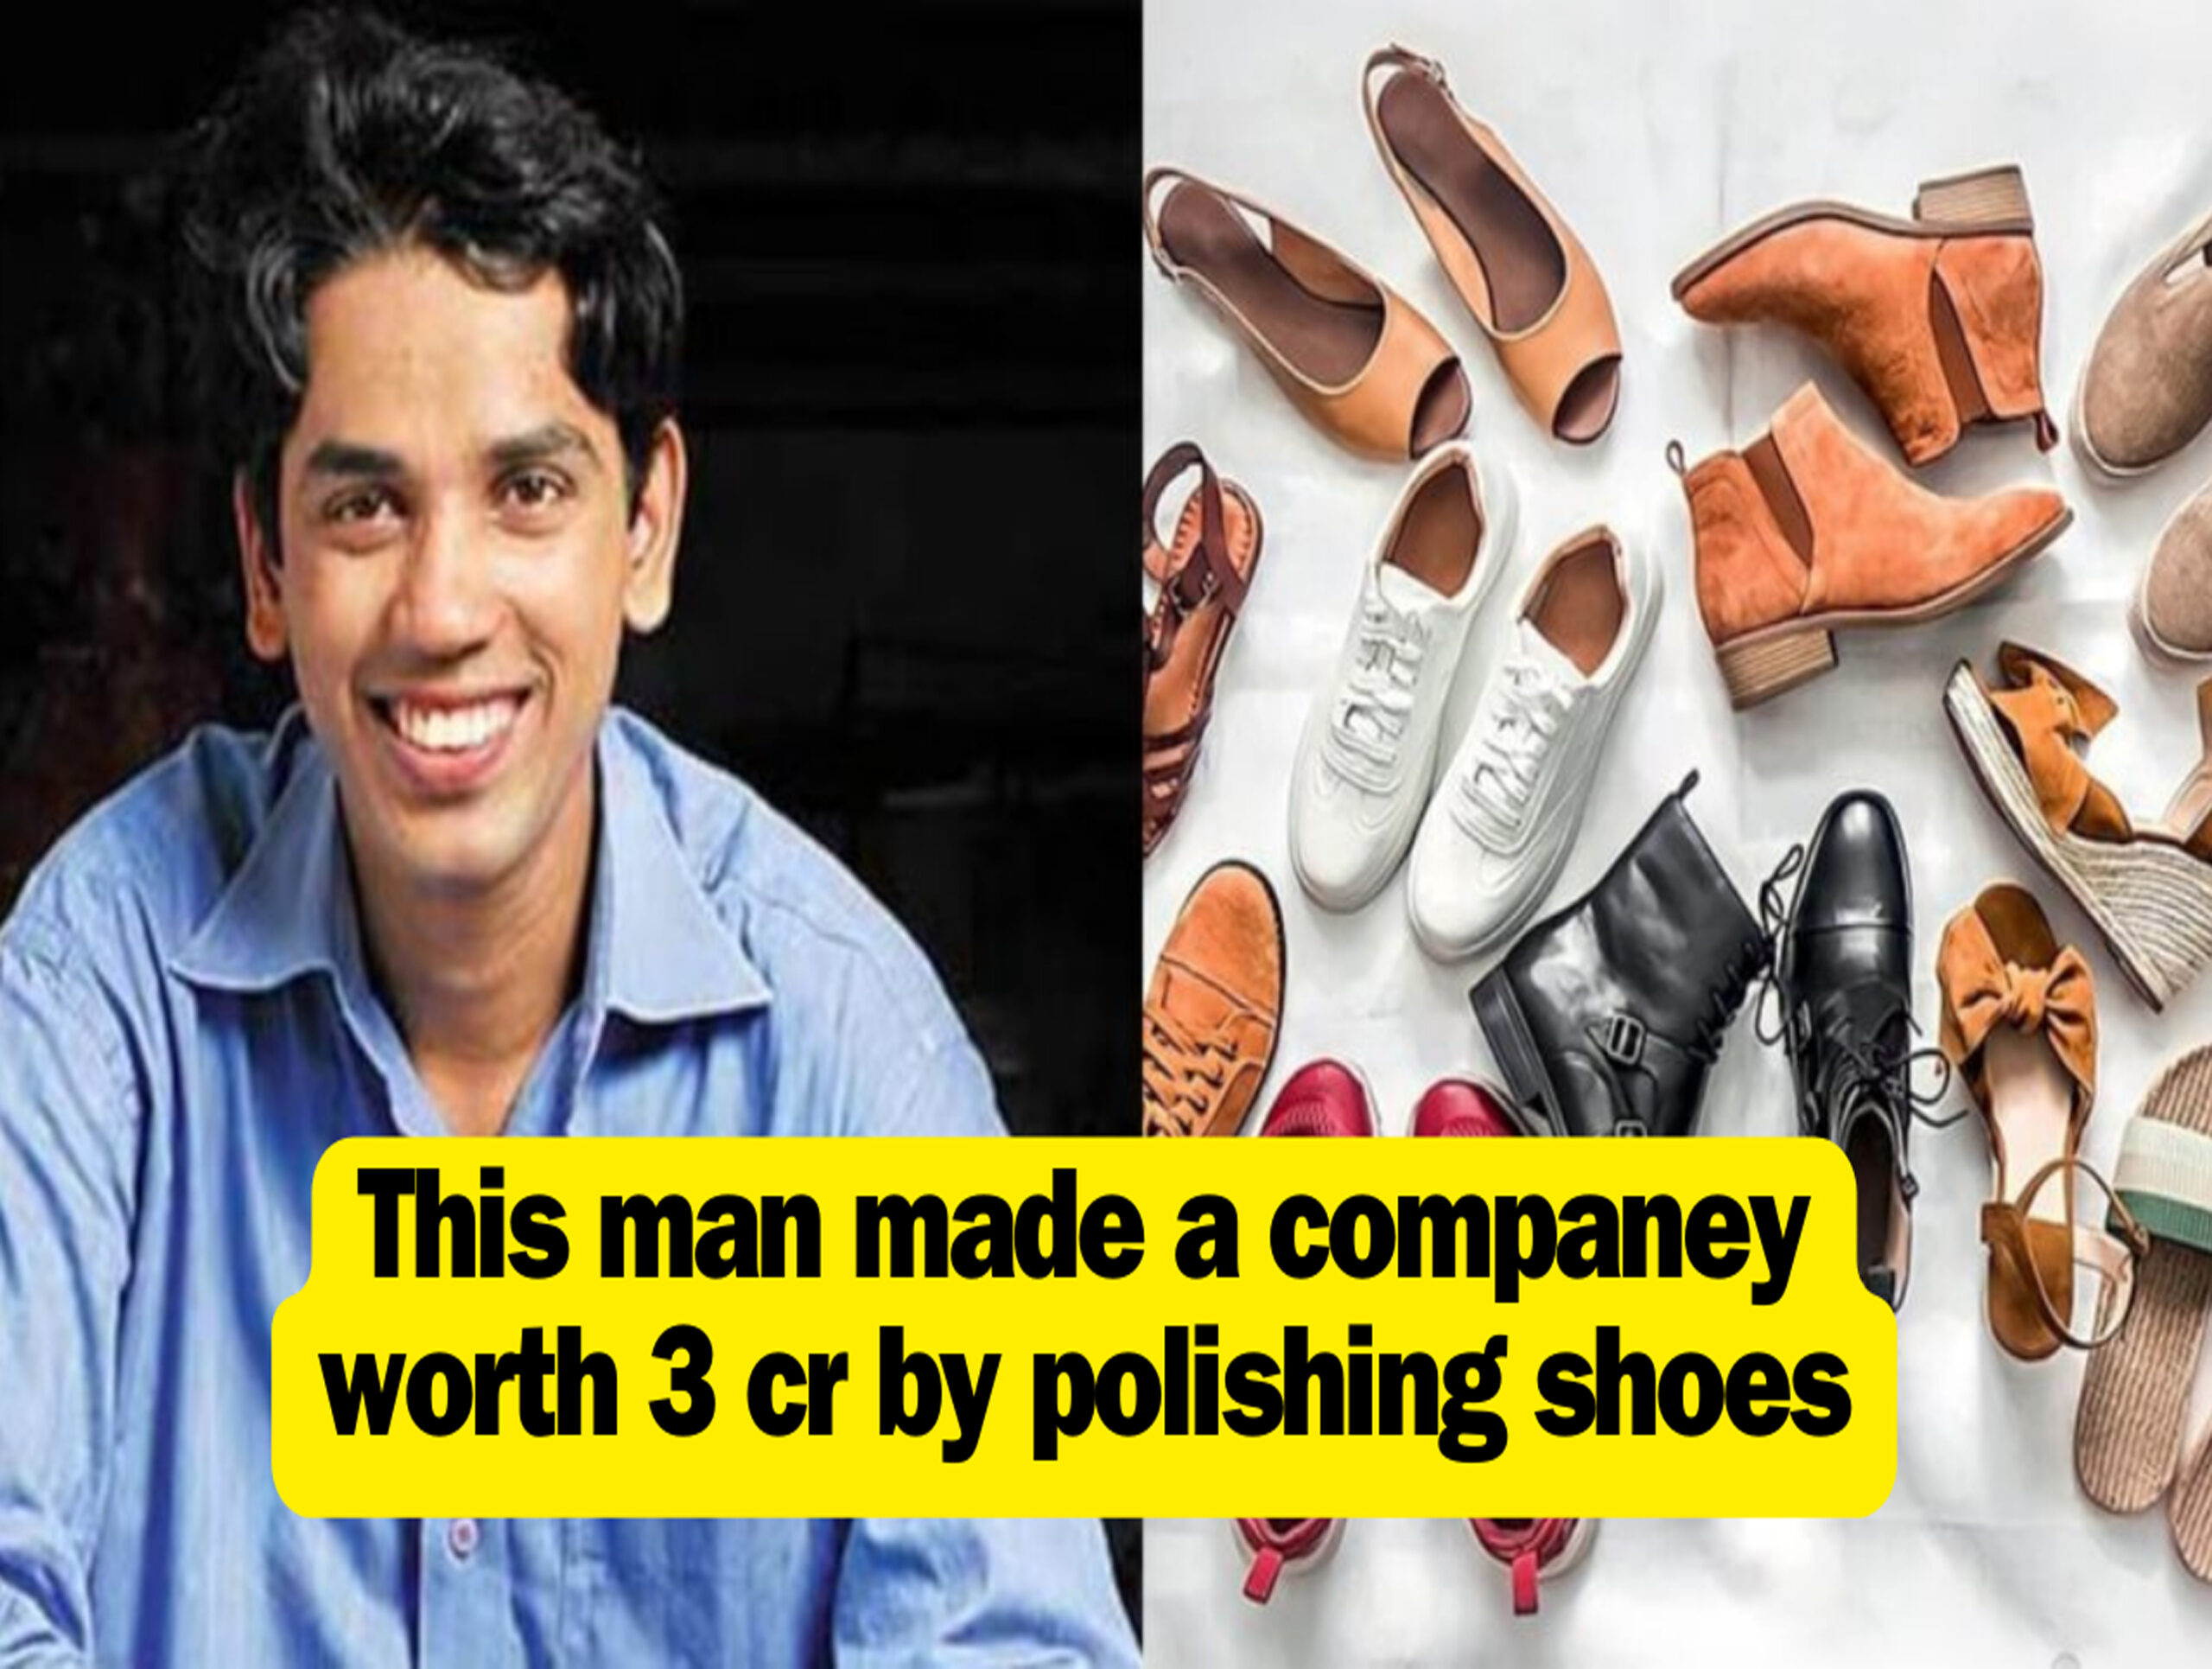 Sandeep Gajakas Become A Millionaire By Polishing Shoes